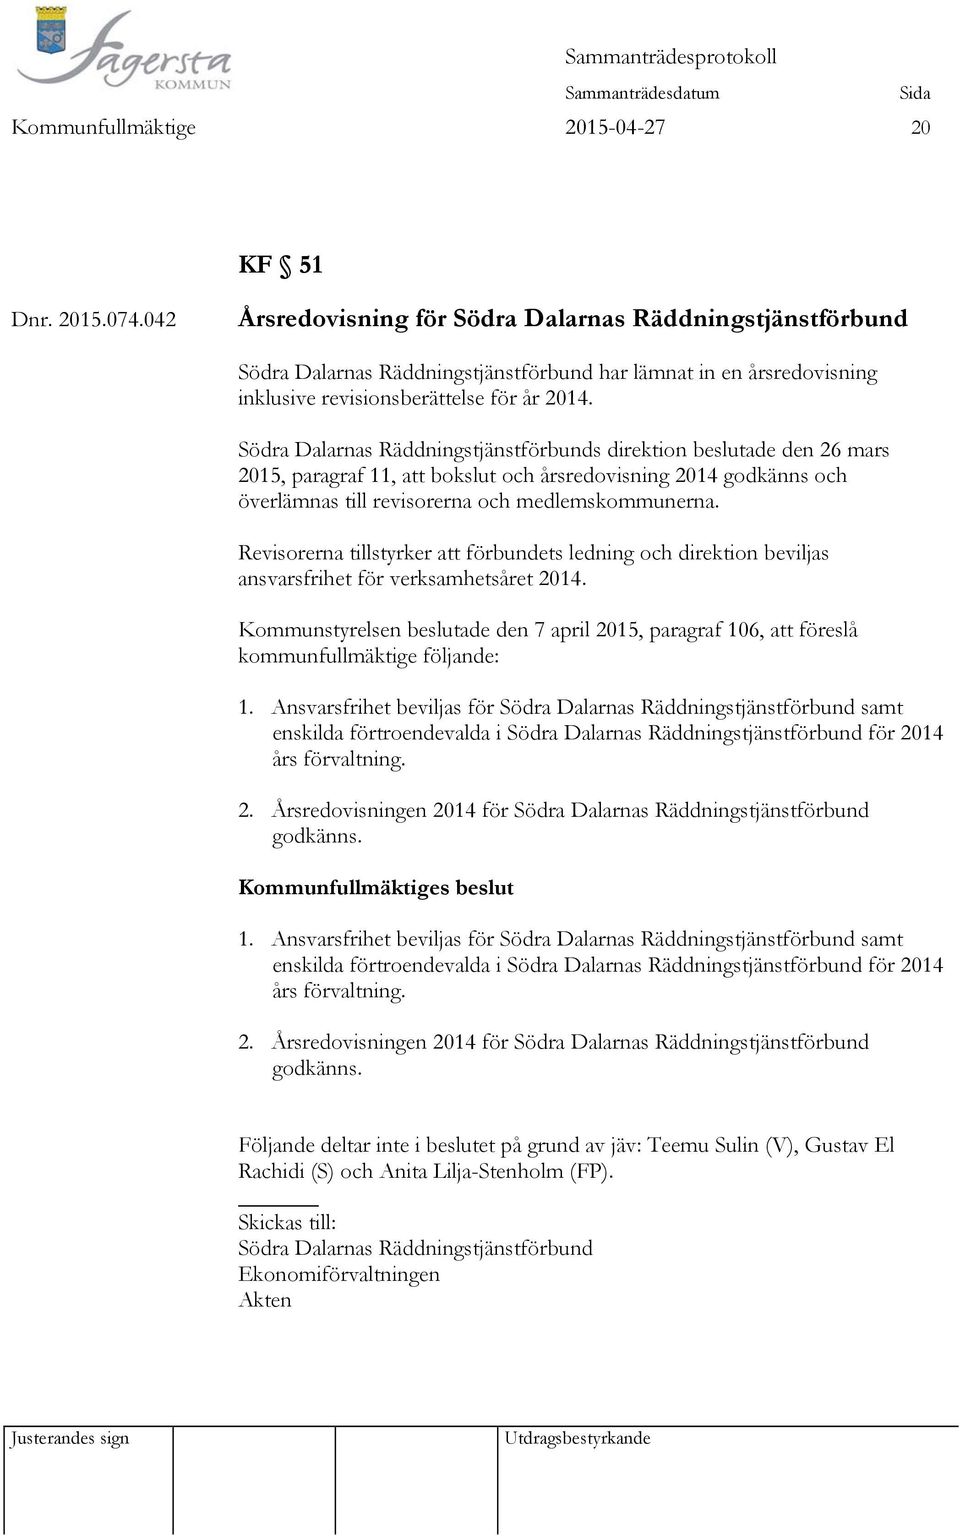 Södra Dalarnas Räddningstjänstförbunds direktion beslutade den 26 mars 2015, paragraf 11, att bokslut och årsredovisning 2014 godkänns och överlämnas till revisorerna och medlemskommunerna.